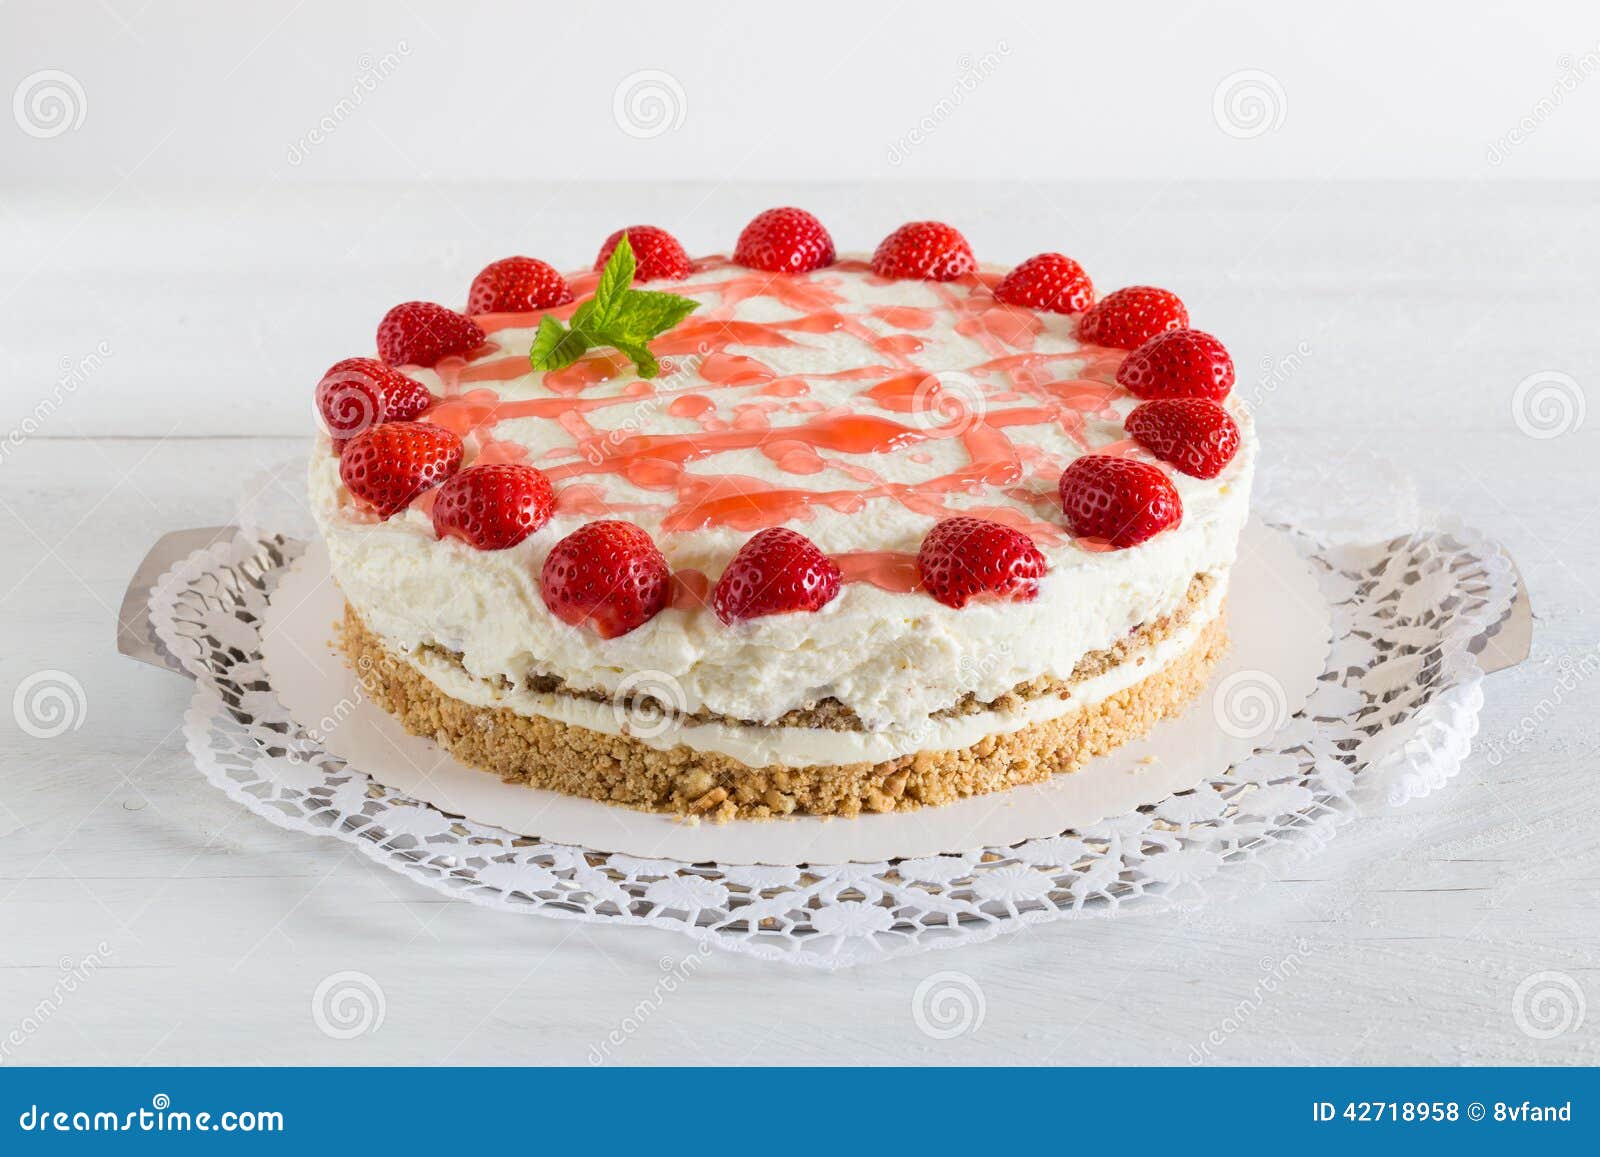 Cake Strawberry cream cheese on white wood.